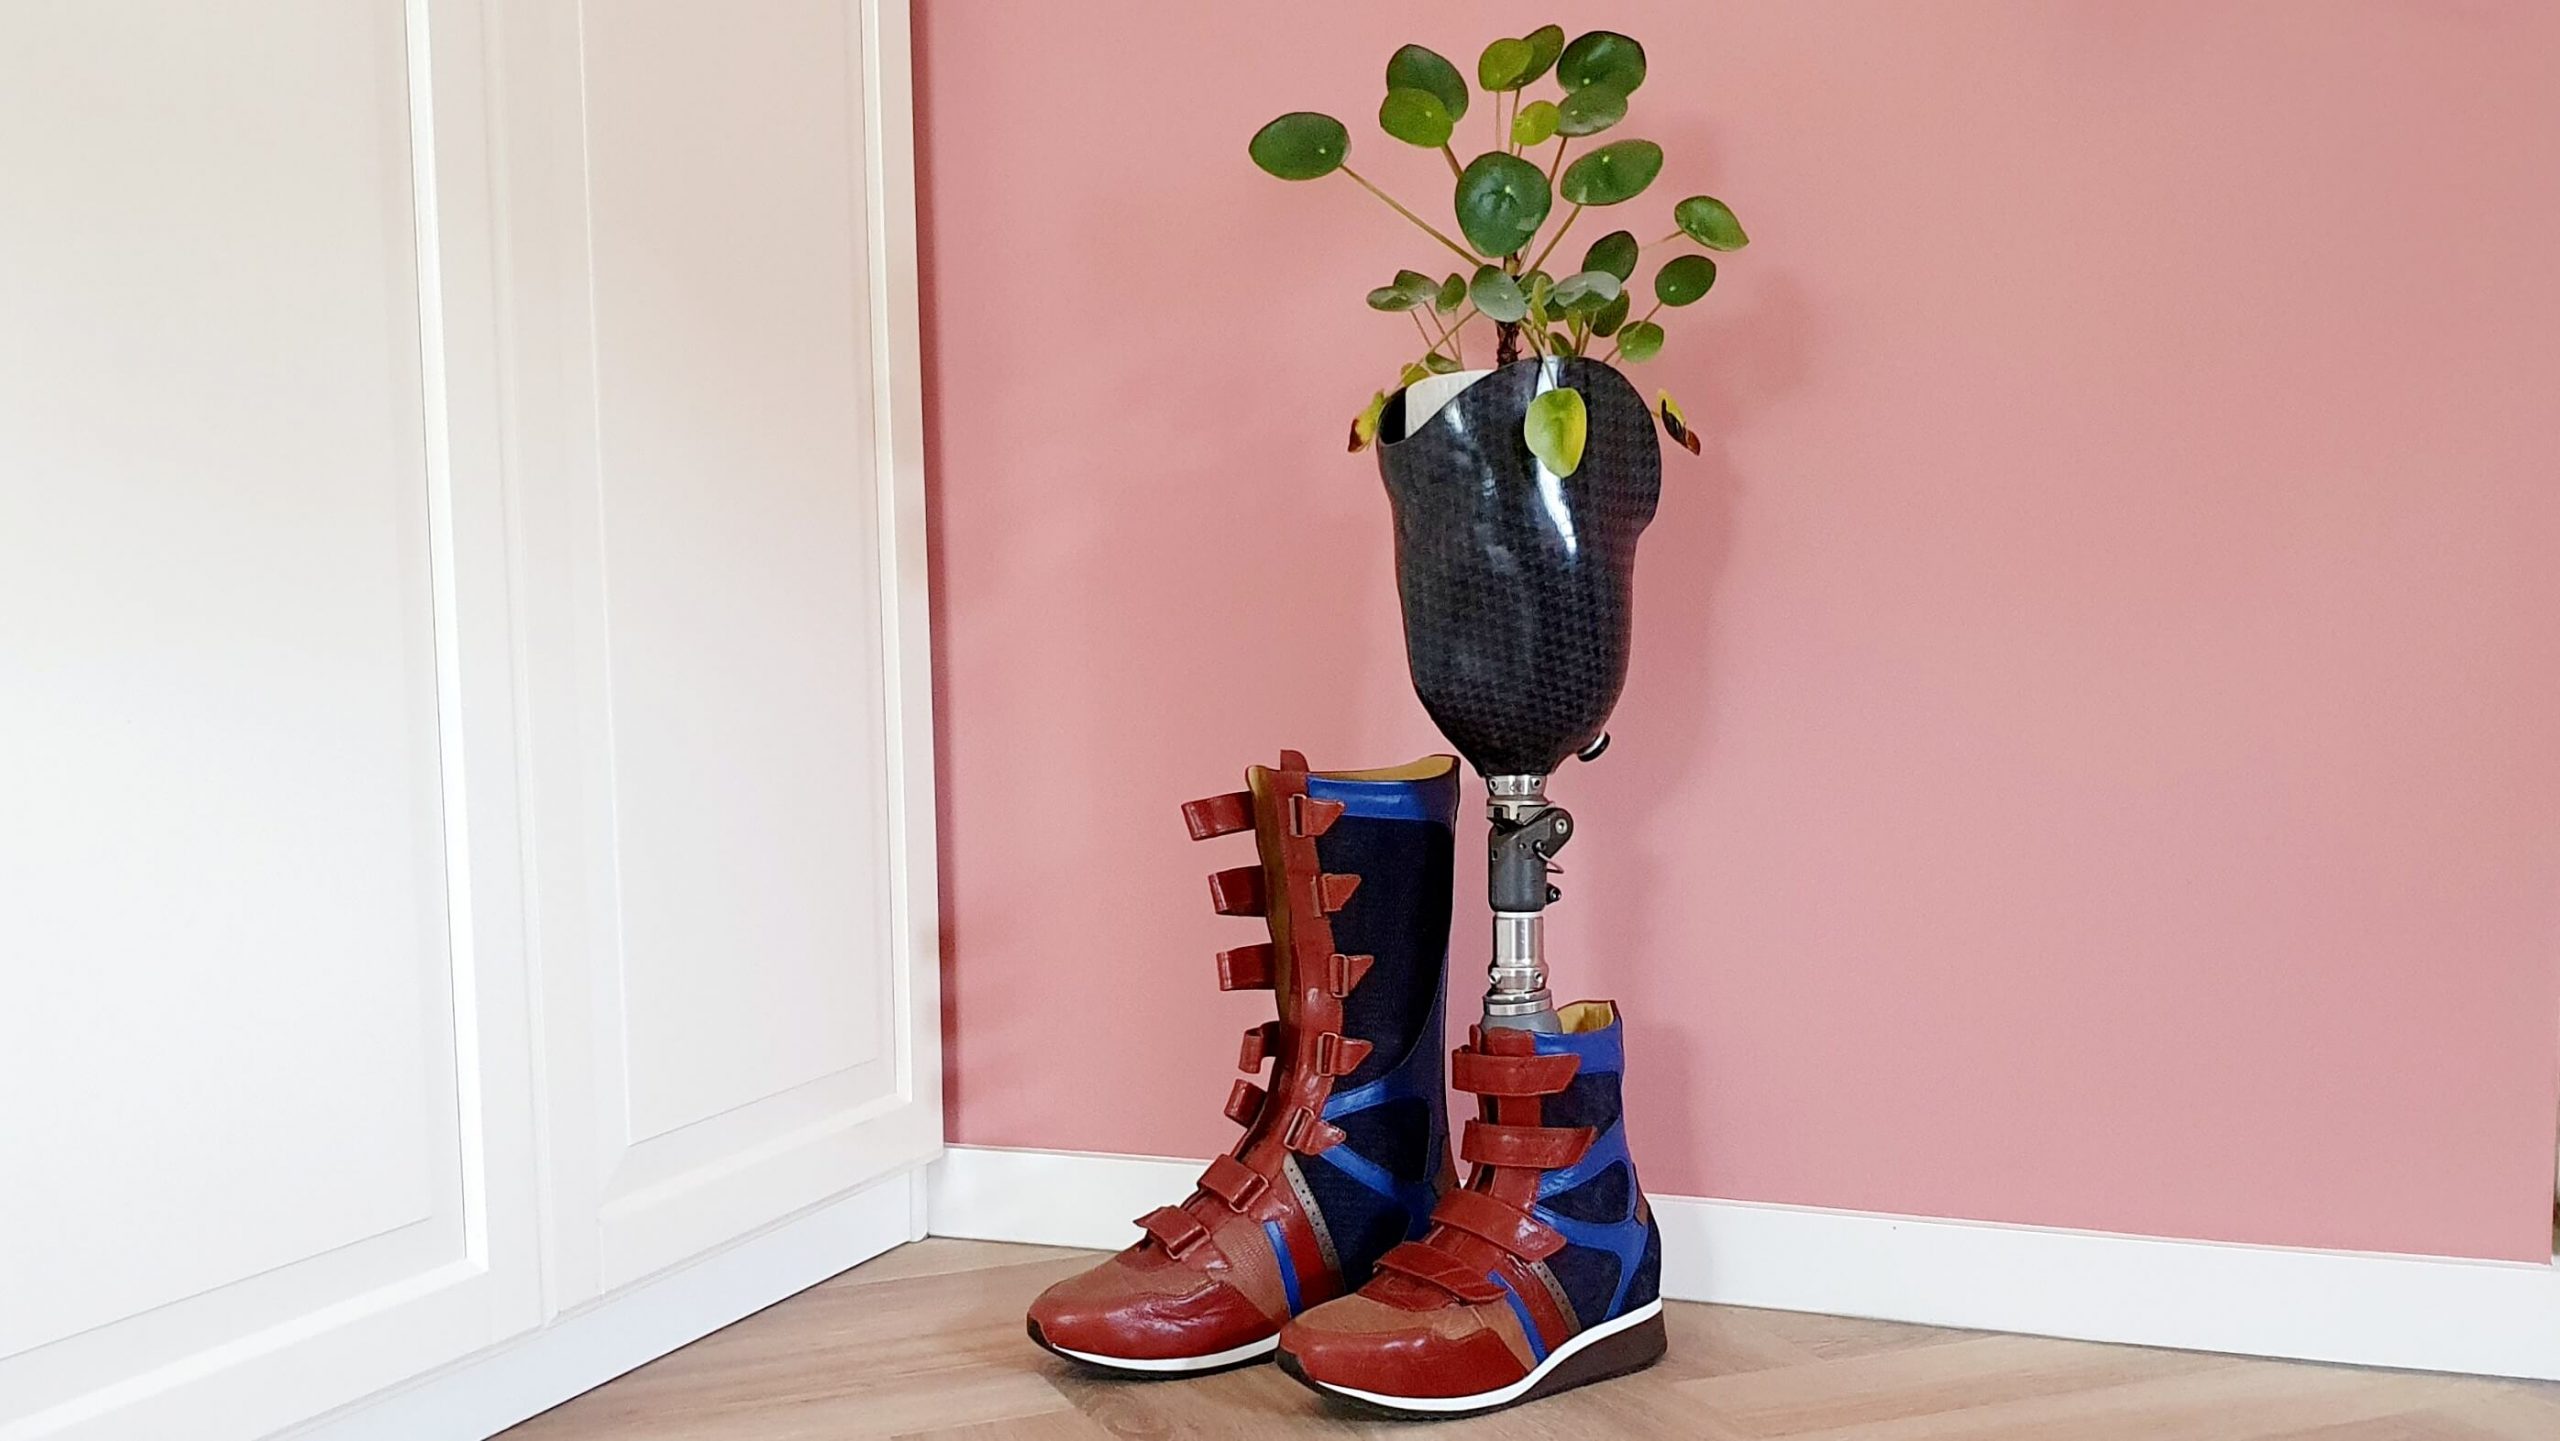 afbeelding van orthopedische schoen en een beenprothese met in de prothese een pannenkoekenplant omdat zonder prothese dat kunstbeen als plantenbak dient